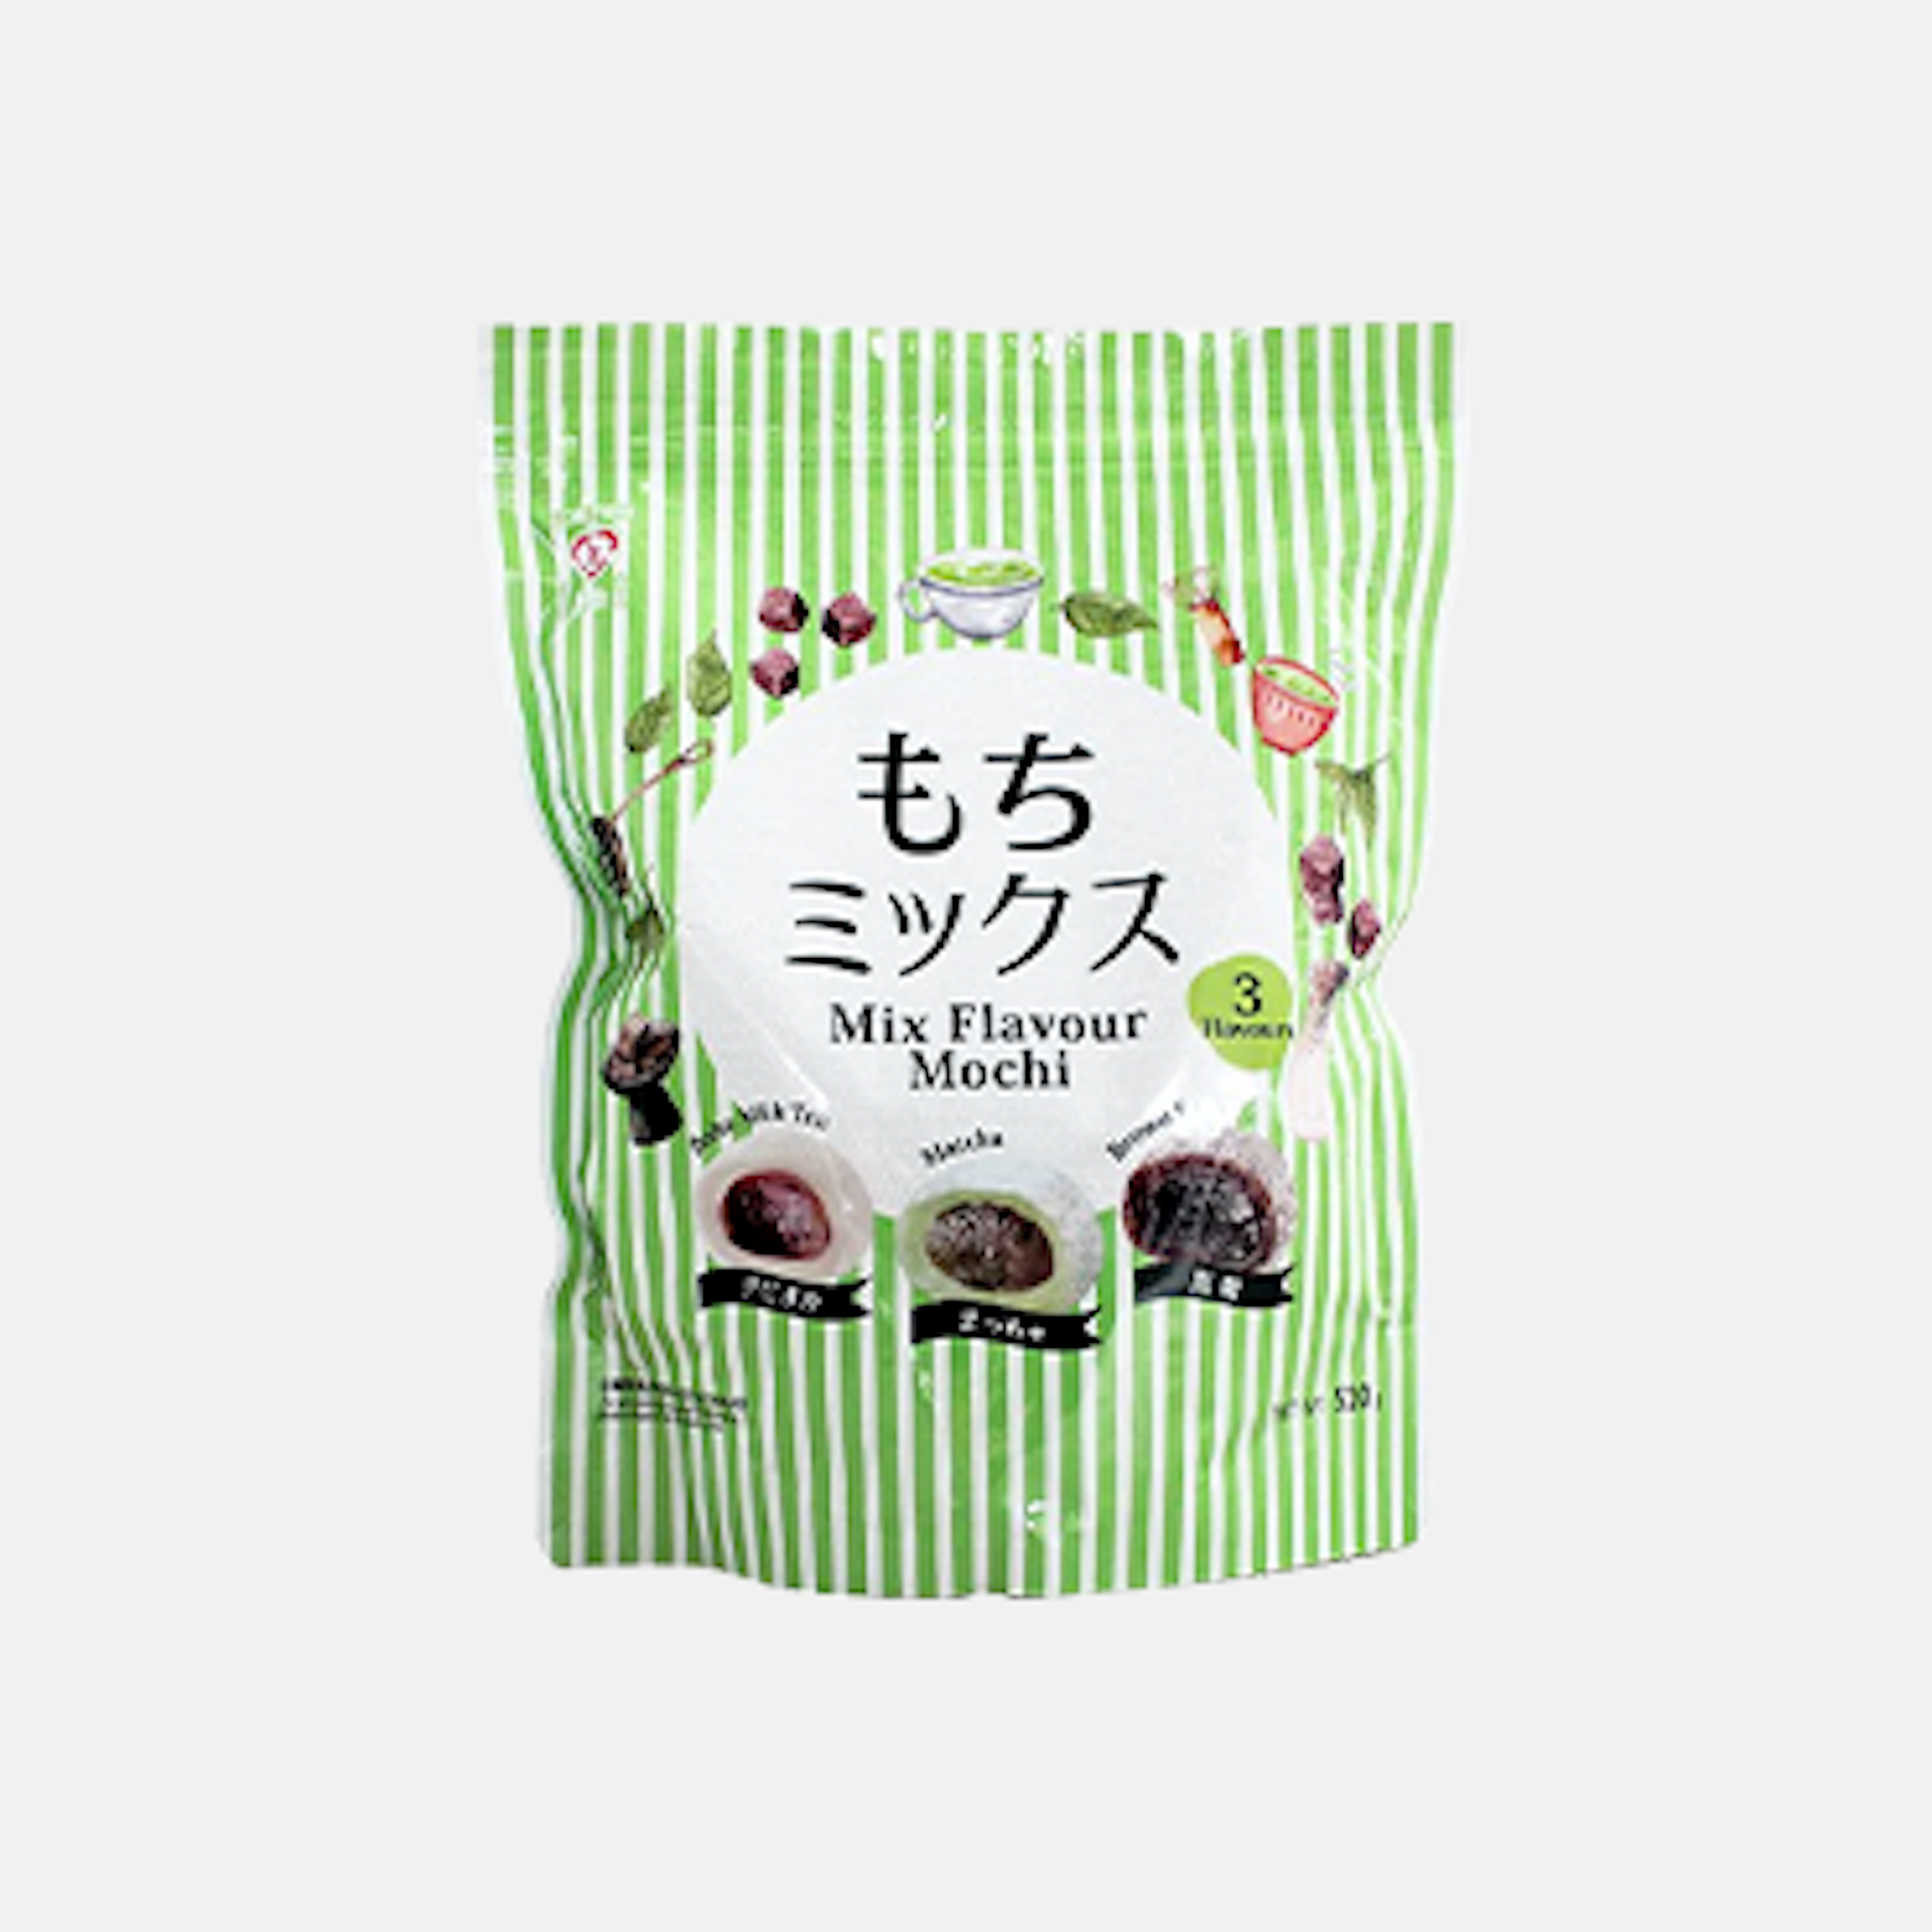 Tokimeki Mix Mochi 510g Verpackung mit verschiedenen Geschmacksrichtungen hervorgehoben